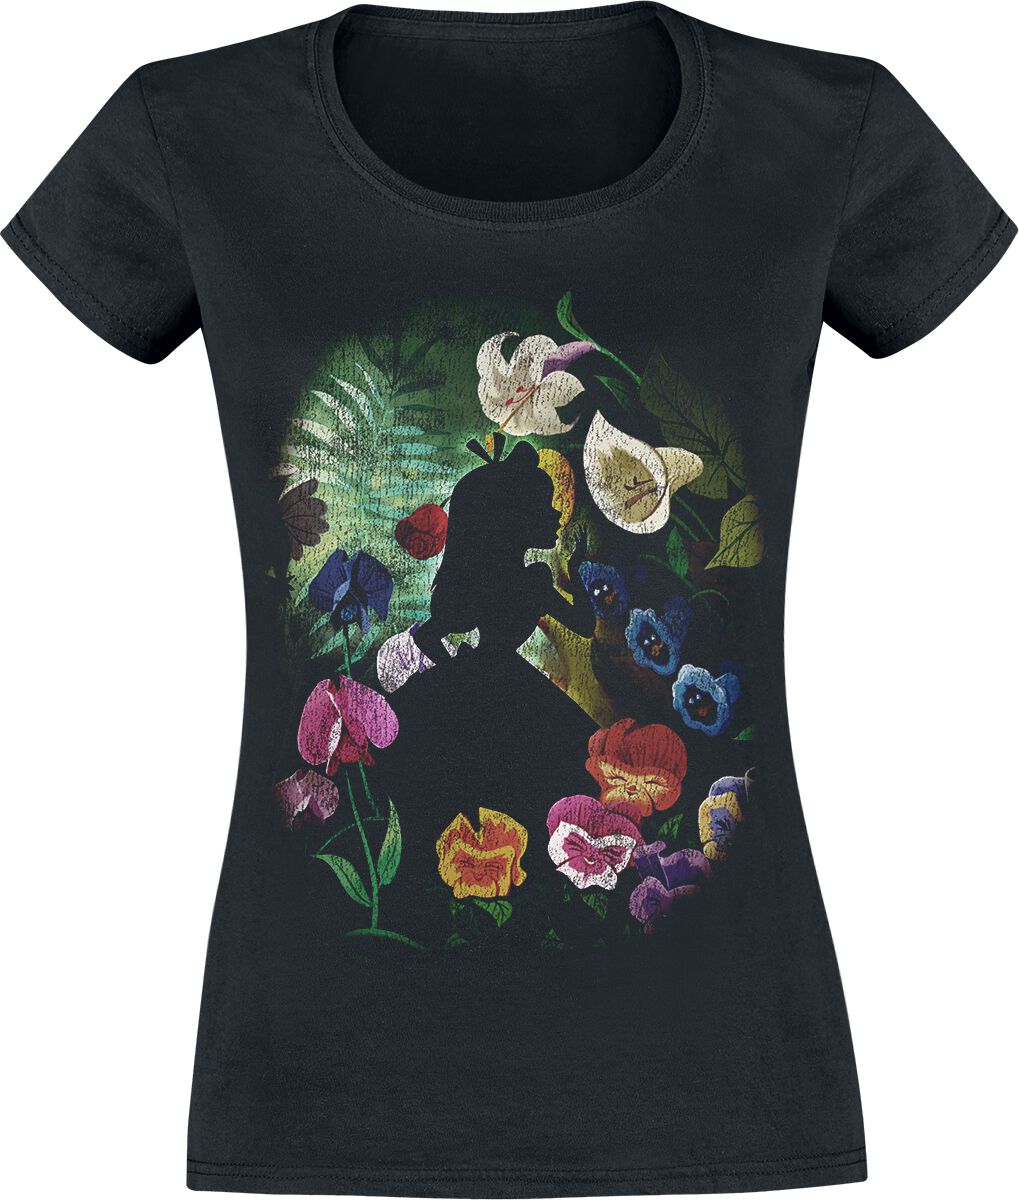 Alice im Wunderland - Disney T-Shirt - Black Flower - XS bis XXL - für Damen - Größe XS - schwarz  - Lizenzierter Fanartikel